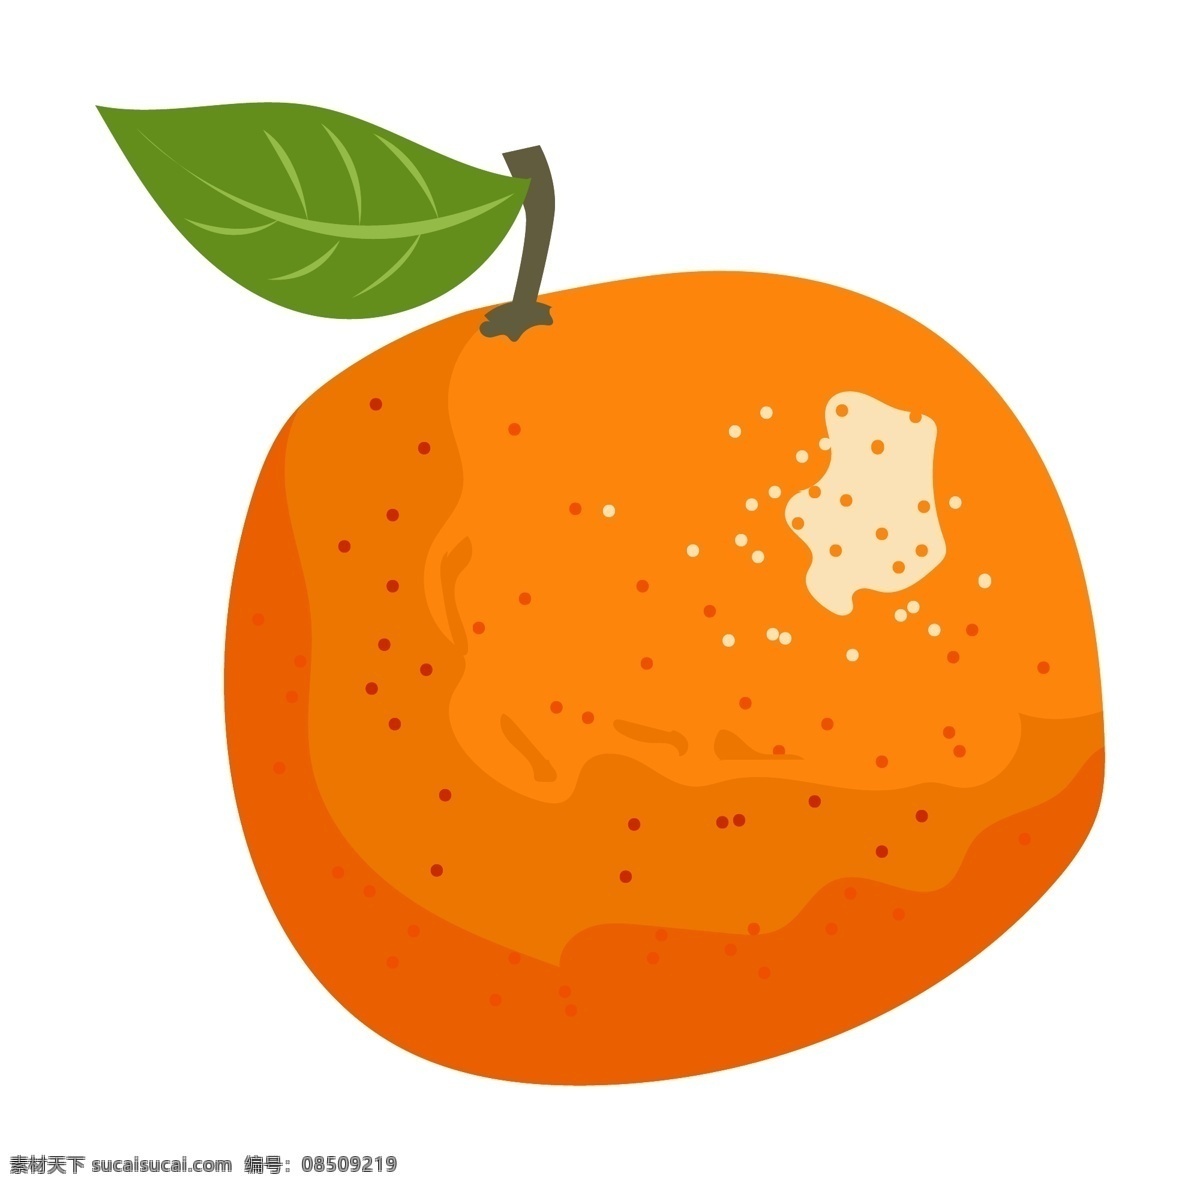 手绘 水果 橘子 插画 绿叶 叶子 植物 手绘水果 手绘橘子 橘子插画 水果橘子插画 橘子插图